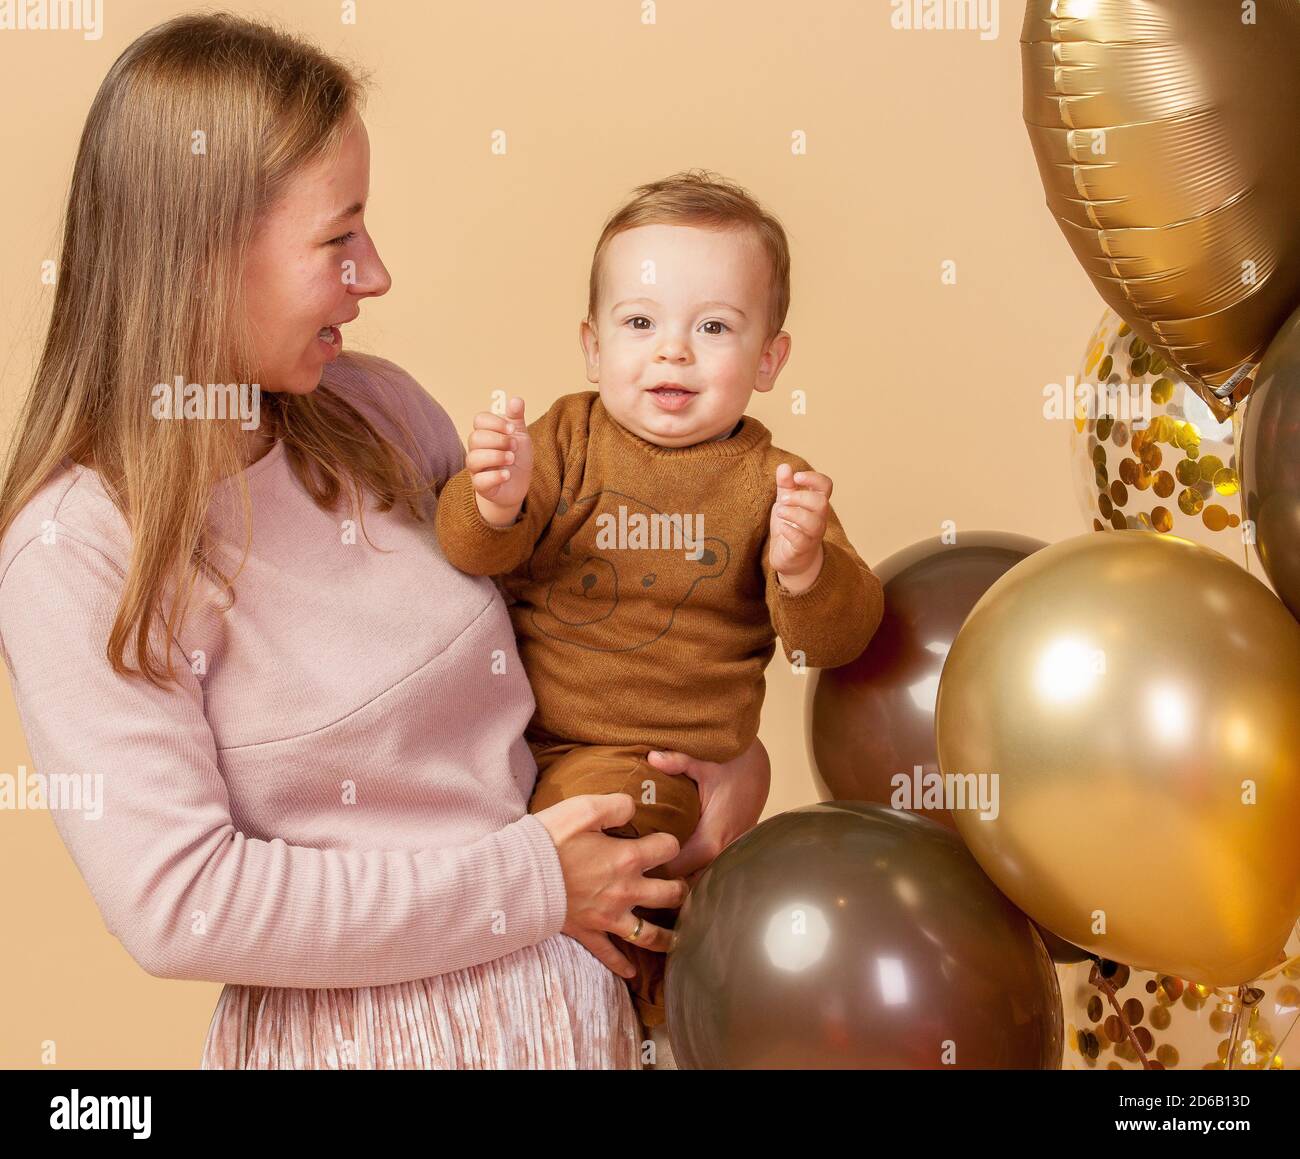 Familie, Mama, Papa, ich, Ballons, Fotoshooting einer jungen Familie mit Kindern anlässlich des Geburtstages des Babys Stockfoto